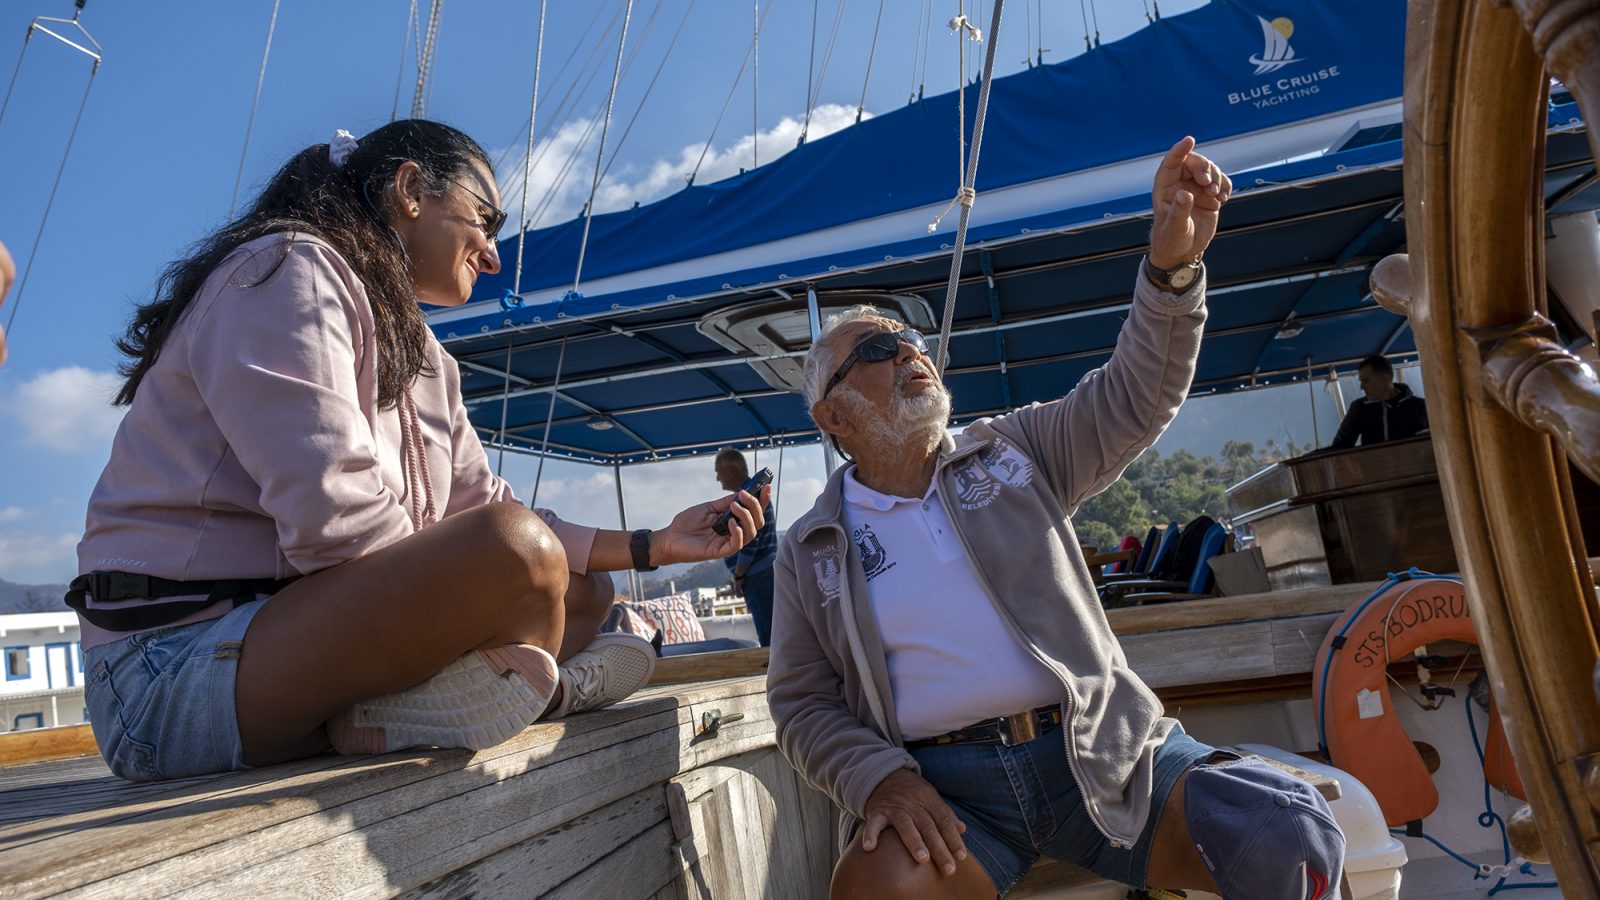 Yücel Köyağasıoğlu 85 yaşında, ama geminin kıç tarafından şöyle bir “Trinket alesta!” diye bağırdı mı baş tarafındaki denizciler anında alesta oluyor. Yarış sırasında gemideki en hırslı, en coşkulu kişi o. Bazen 25, bazen 45 yaşında gibi bir 85 yaş… (Fotoğraf: Mehmet Uyargil)